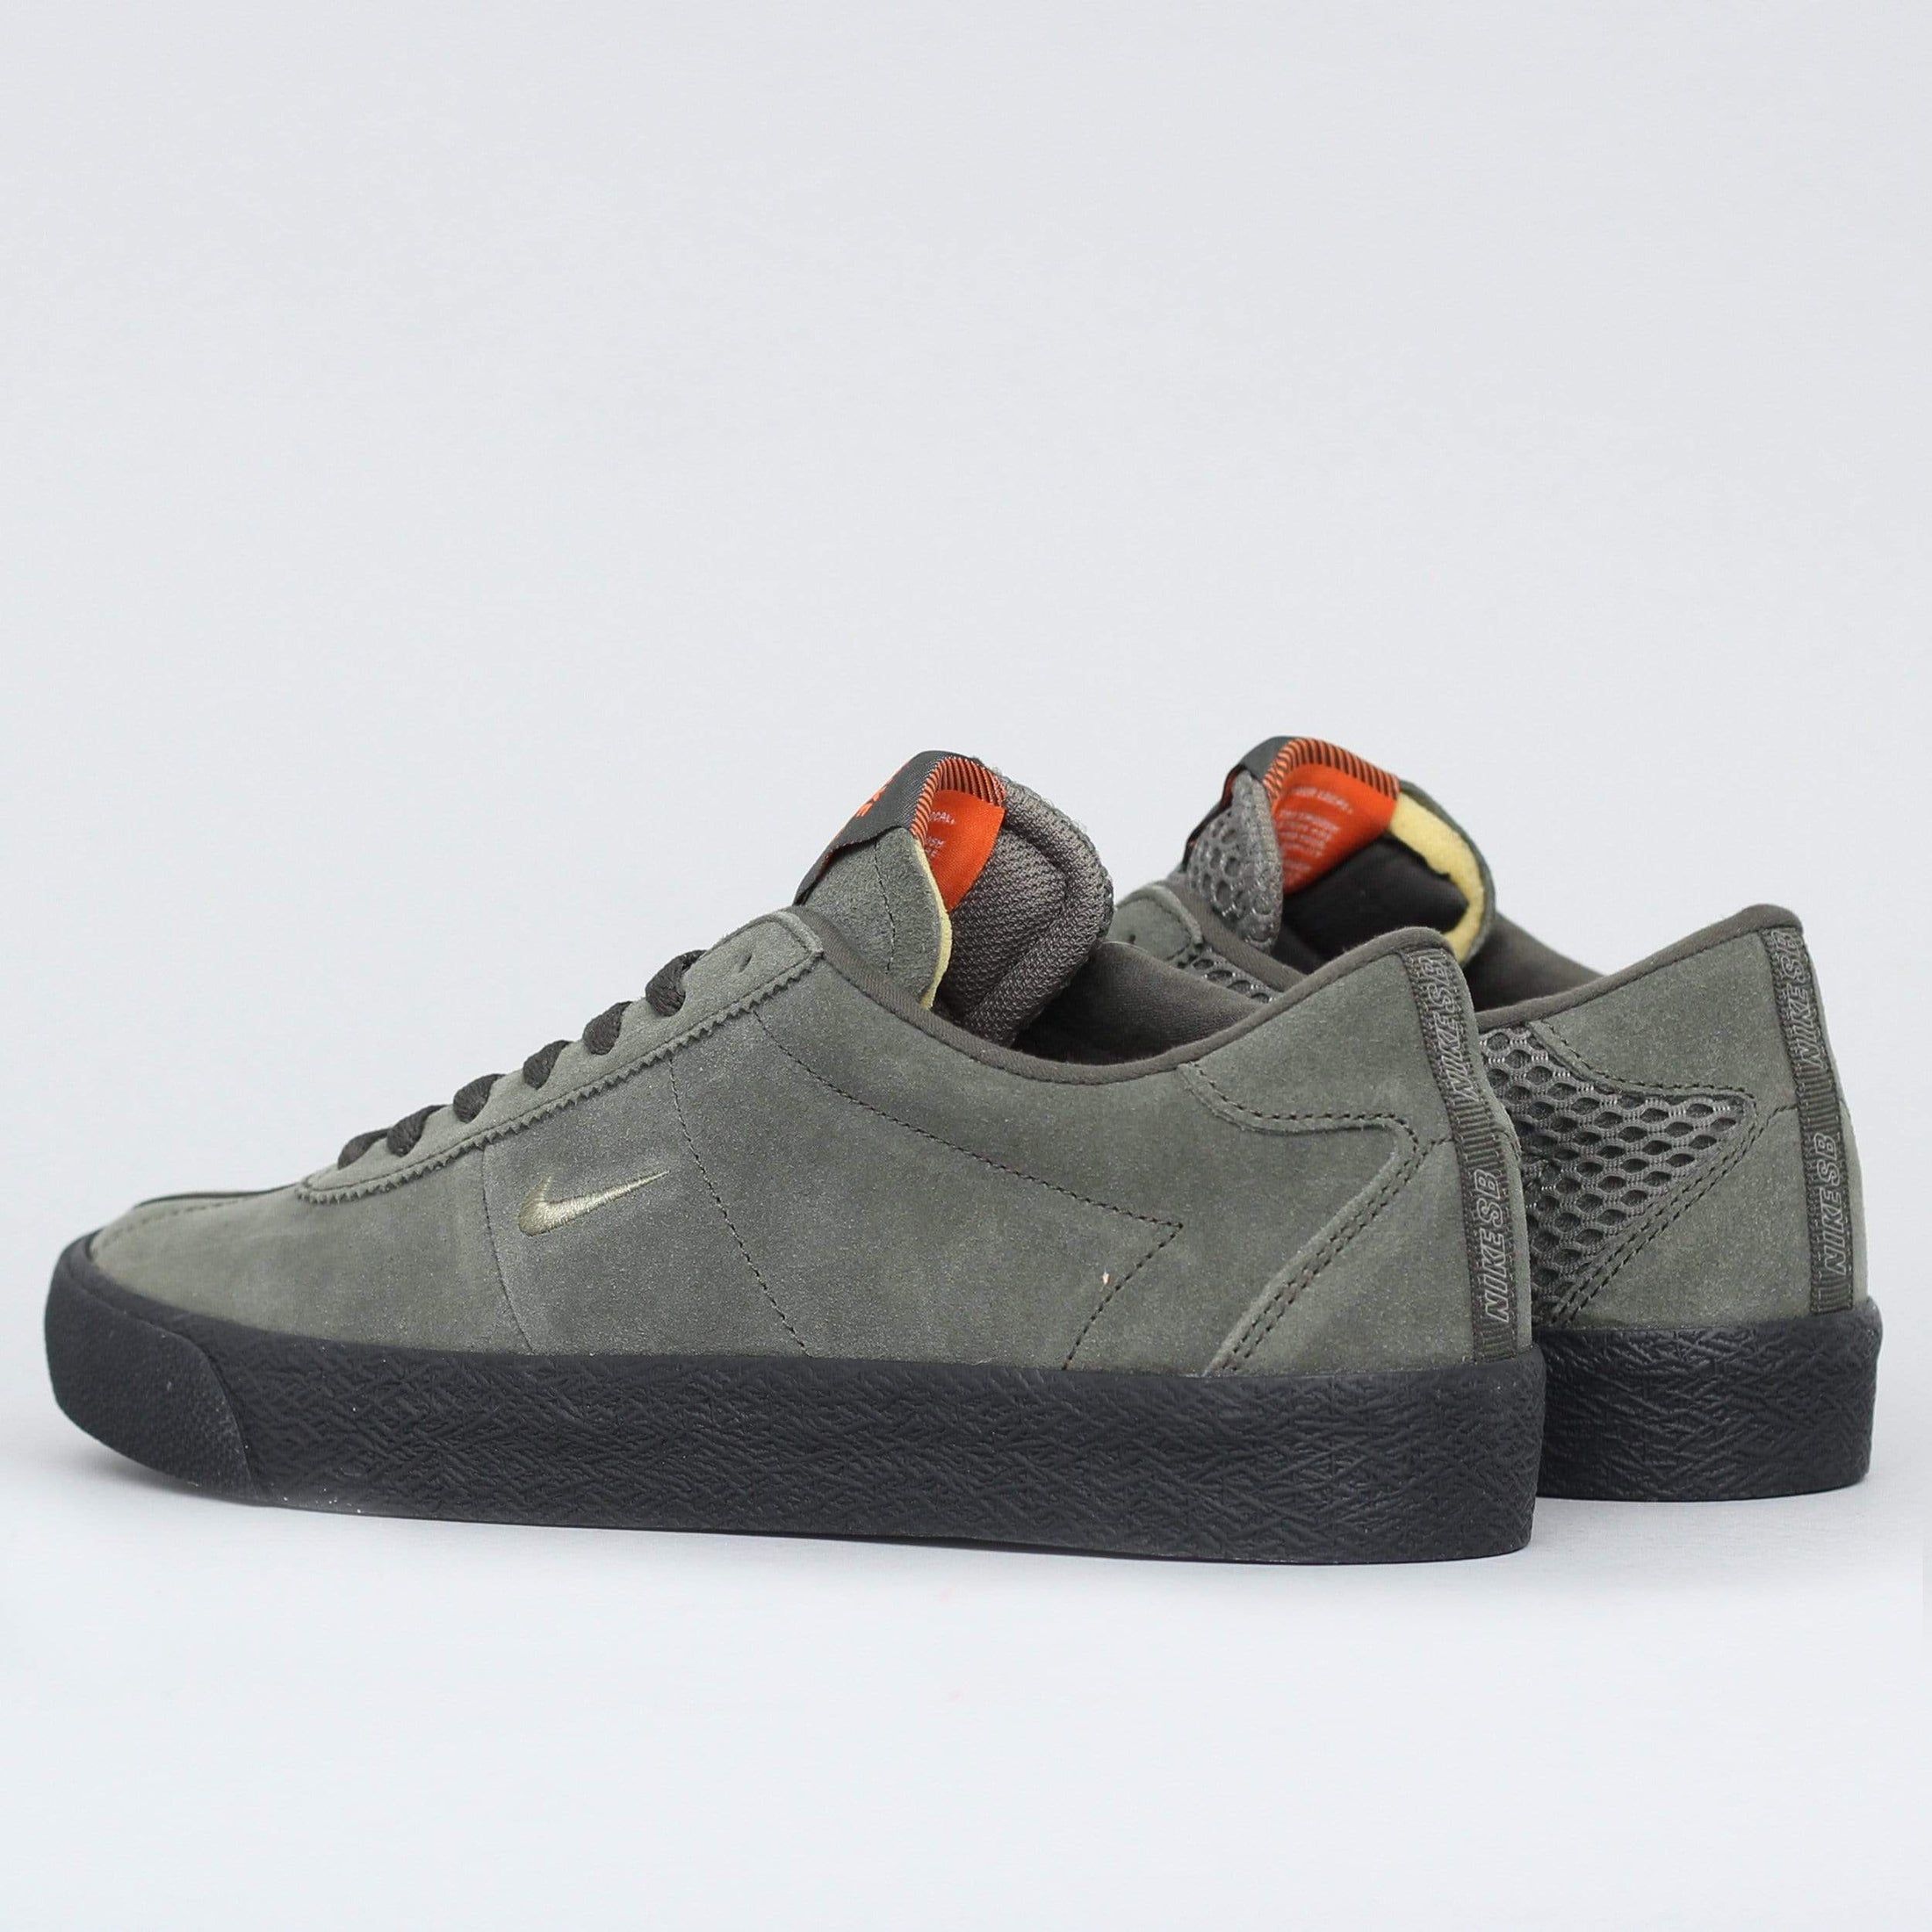 Nike SB Ishod Bruin ISO Orange Label Shoes Sequoia / Olive